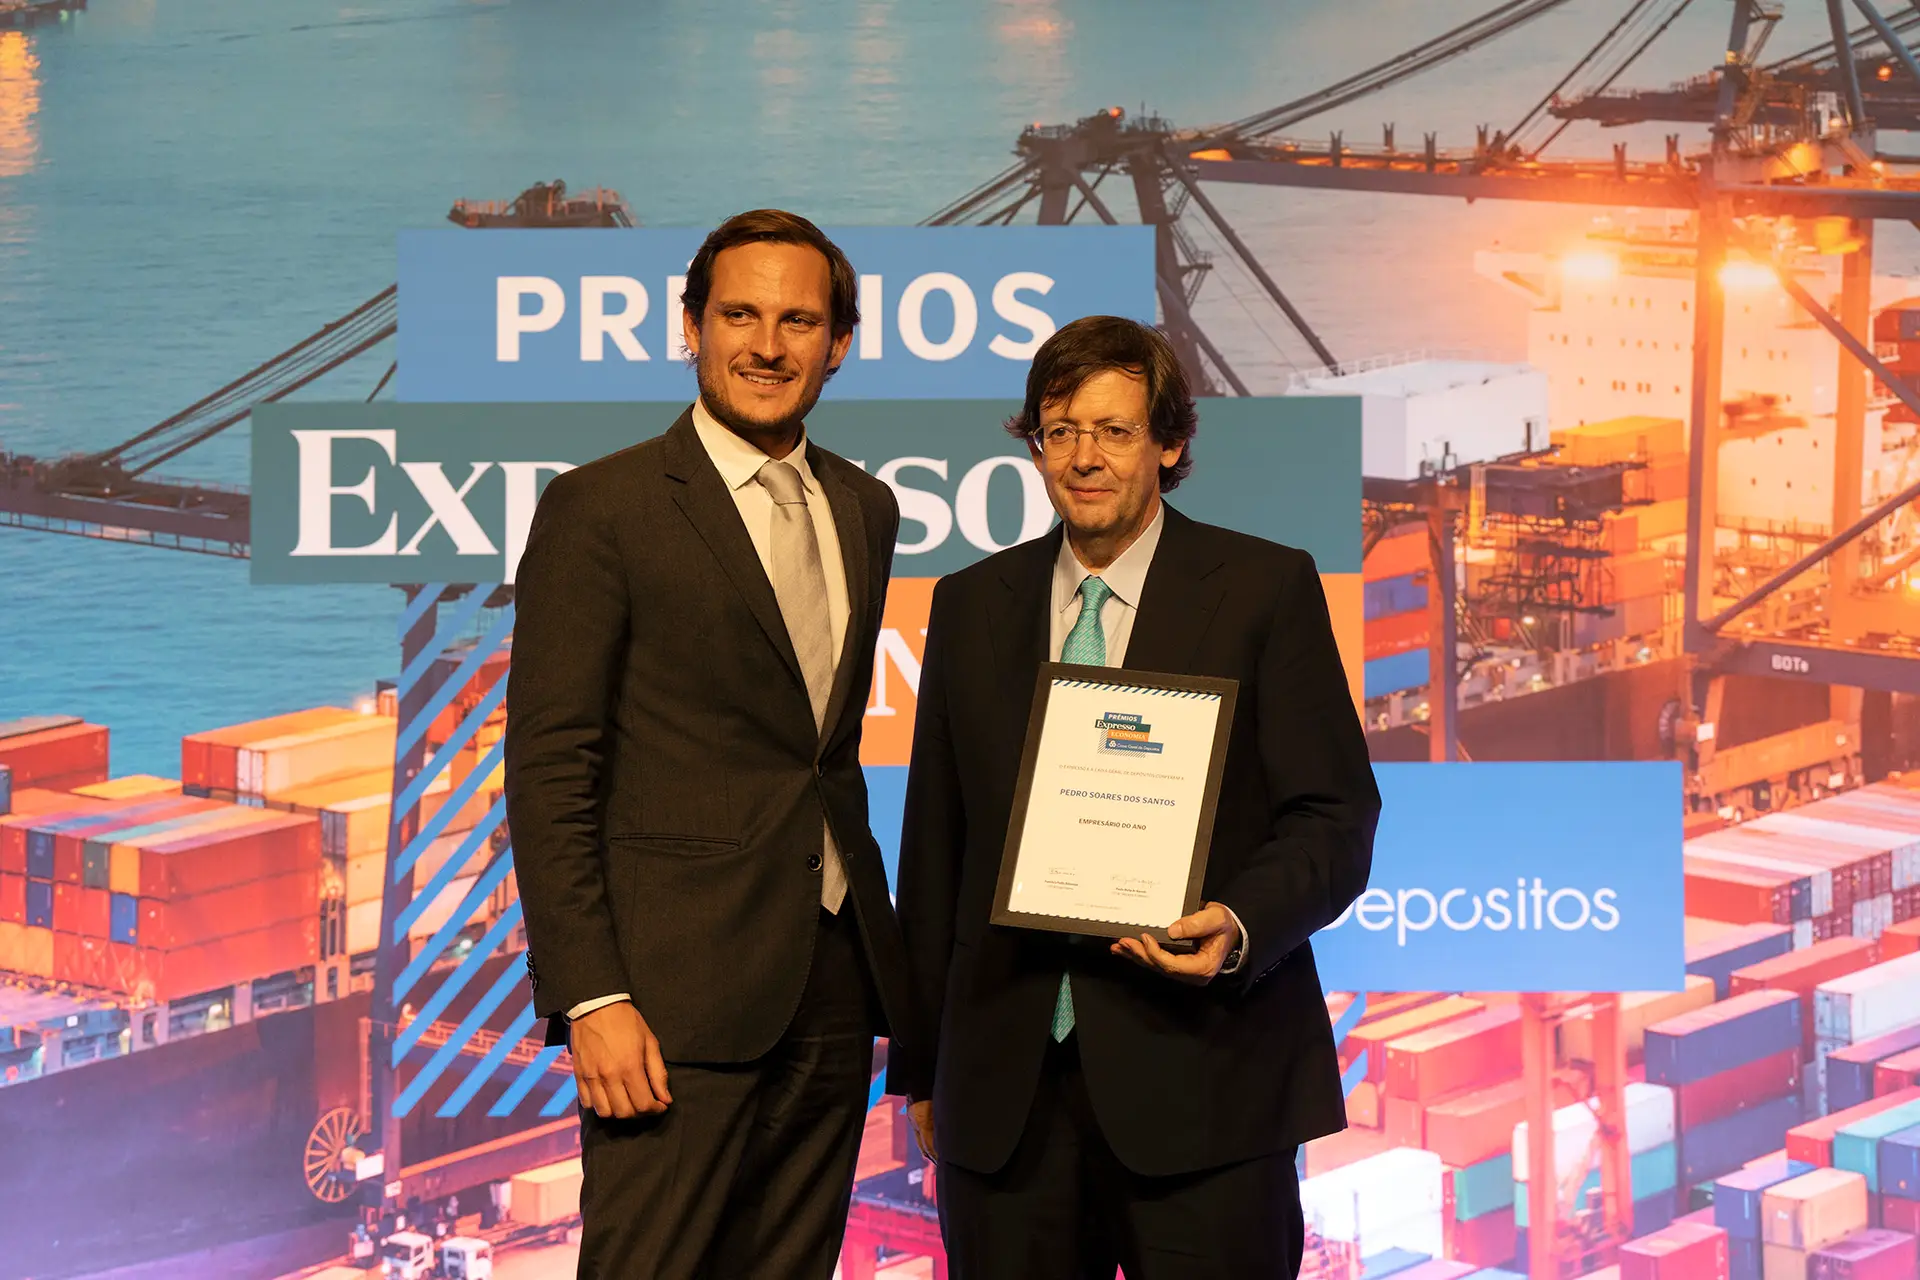 Pedro Soares dos Santos, CEO da Jerónimo Martins, venceu o prémio de Empresário do Ano